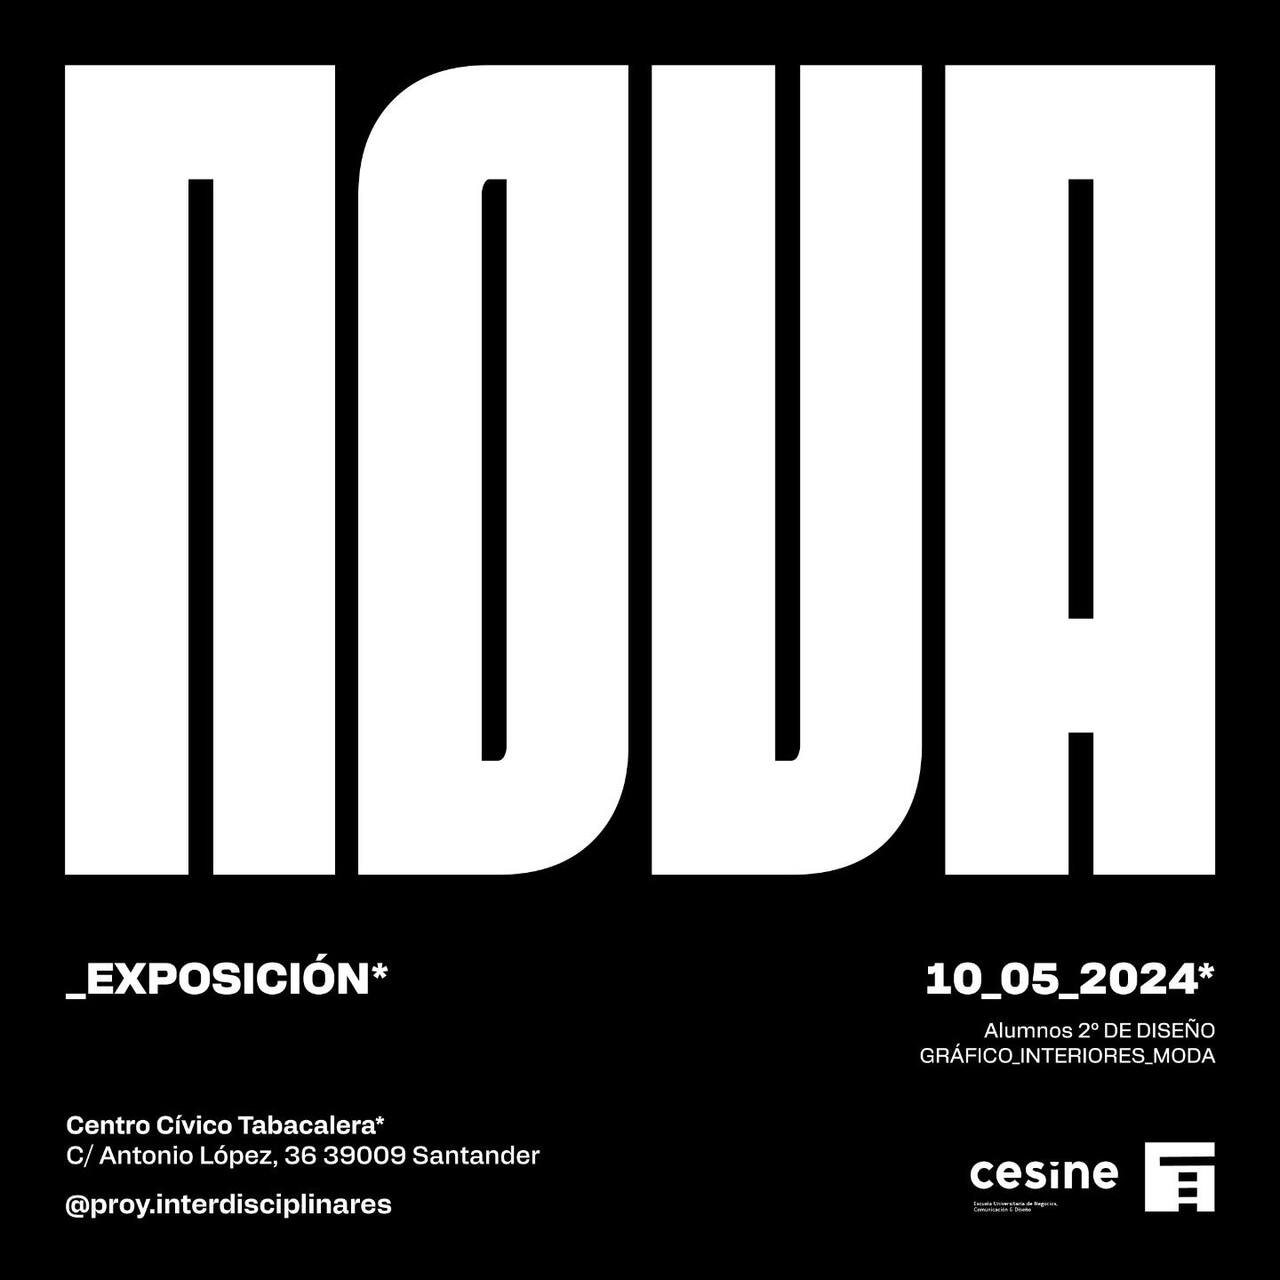 "Nova", proyectos de los alumnos de 2º de Diseño de CESINE